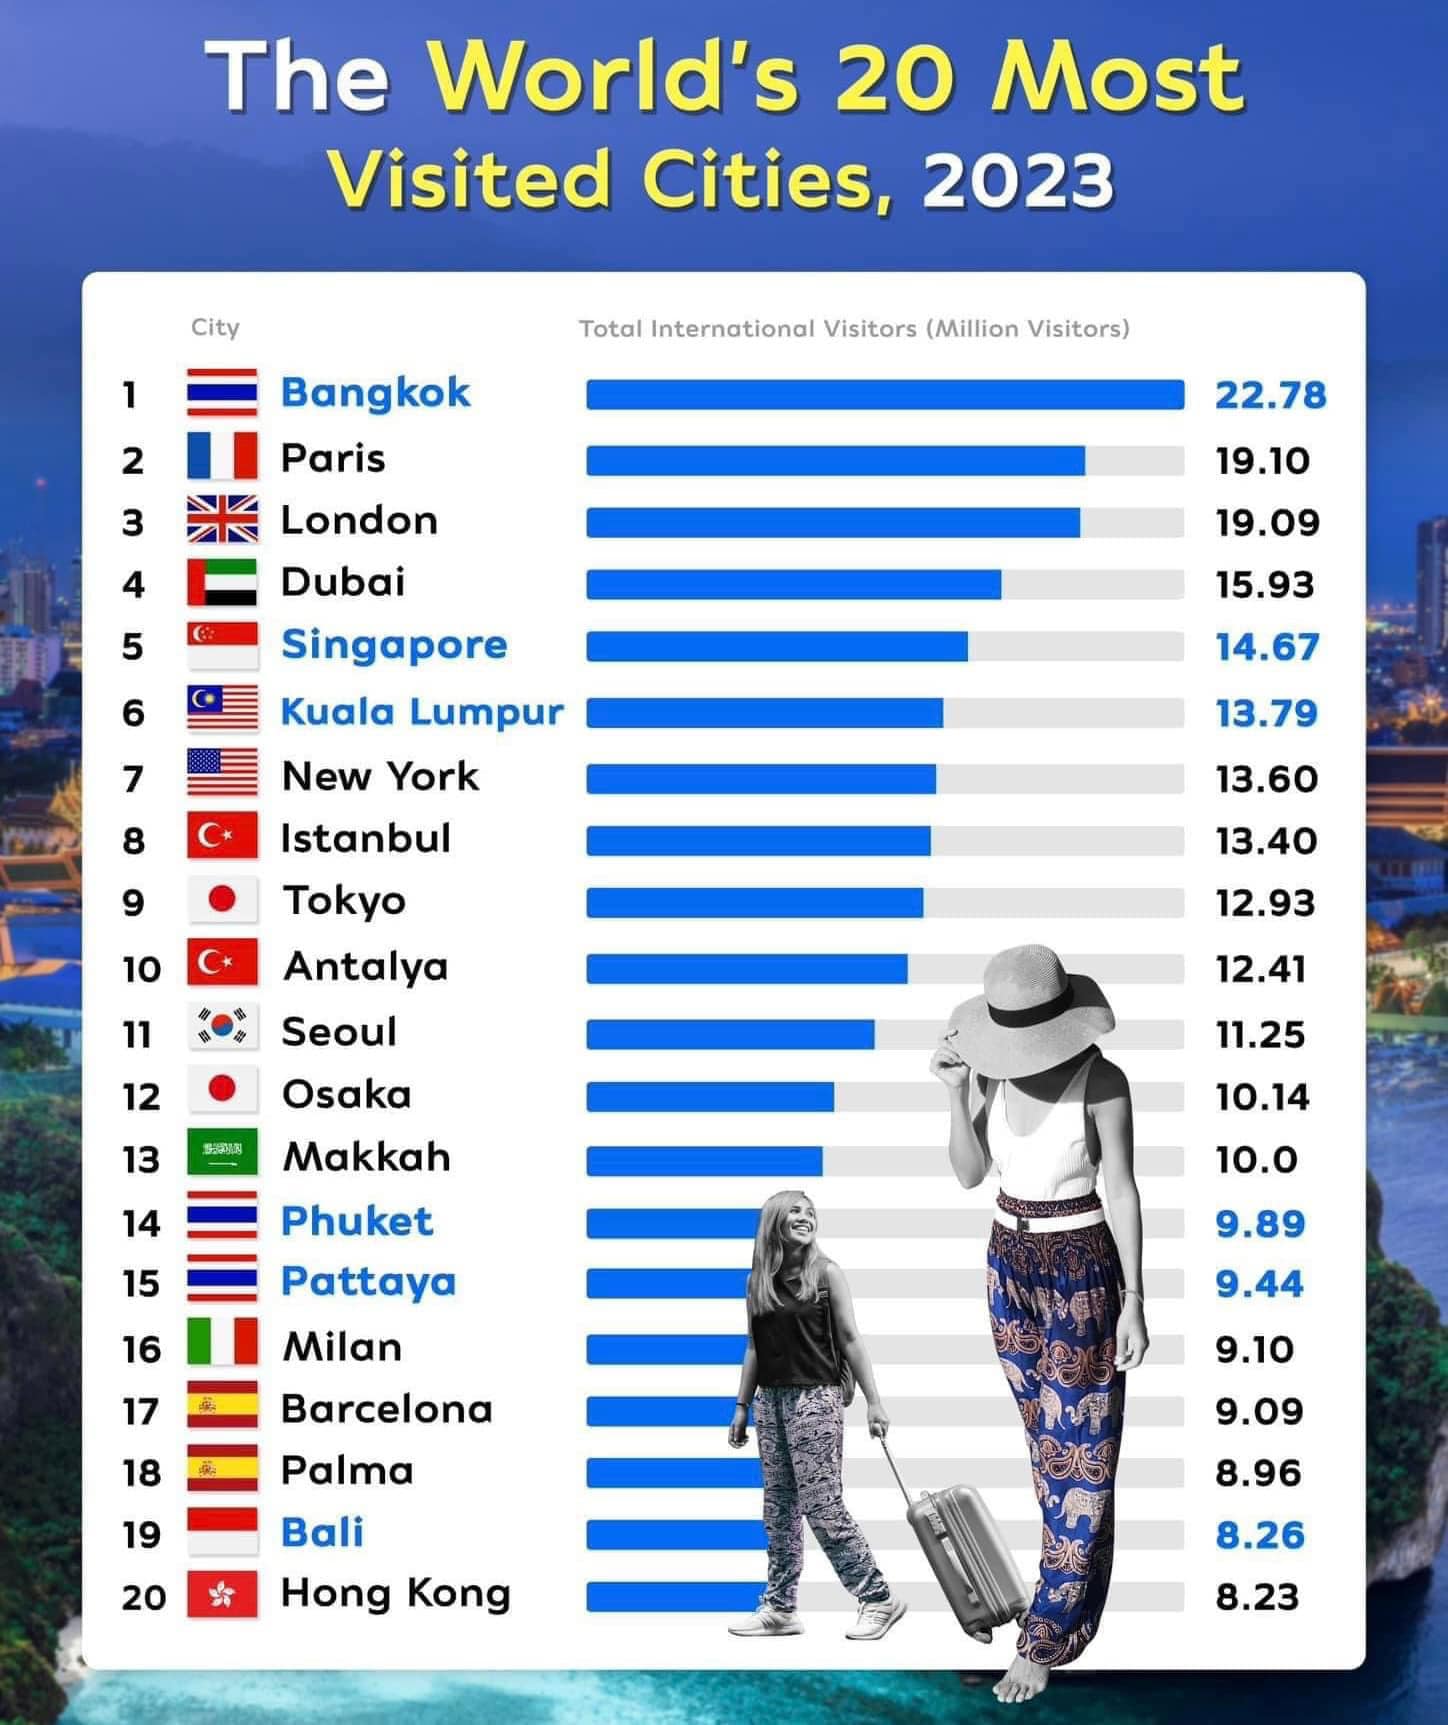 Thái Lan xuất sắc khi có đến 3 thành phố trong bảng xếp hạng (Nguồn: Internet)